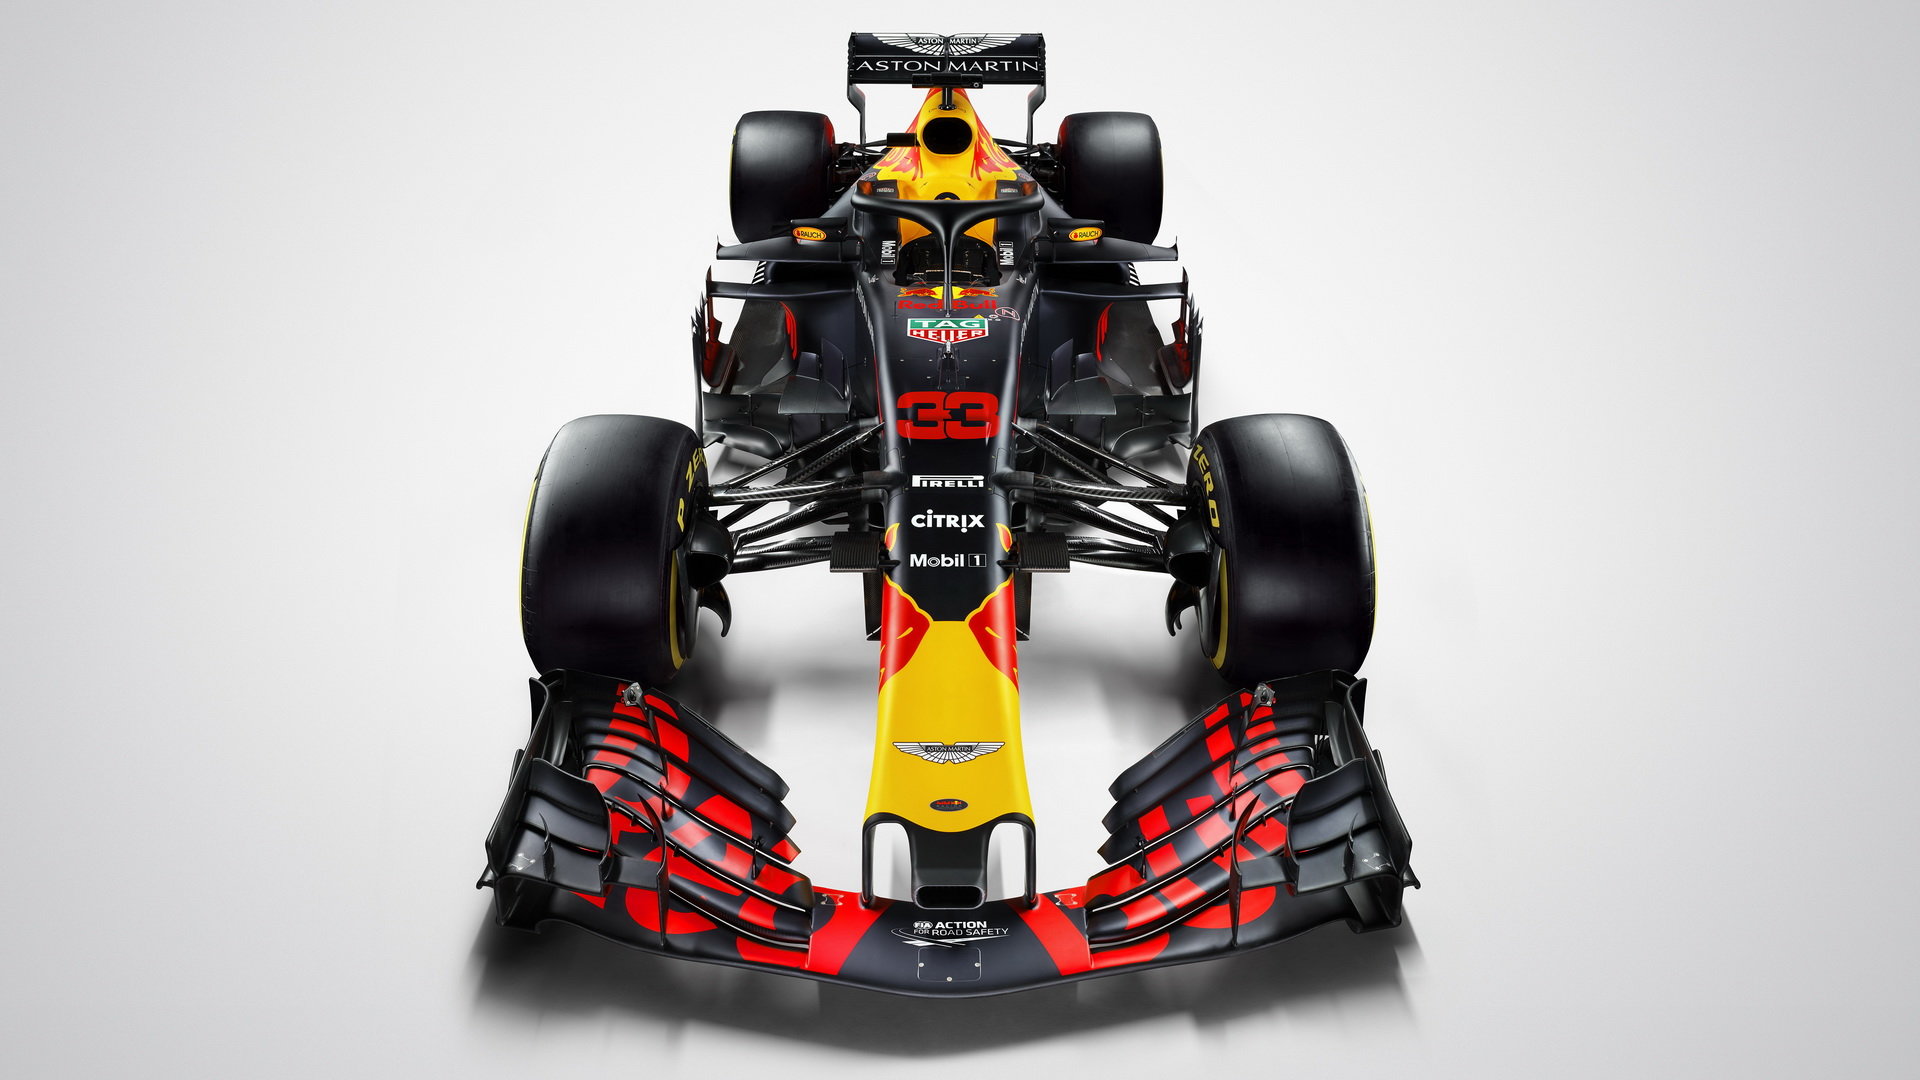 Představení nového vozu Red Bull Red Bull RB14 - Renault pro sezónu 2018